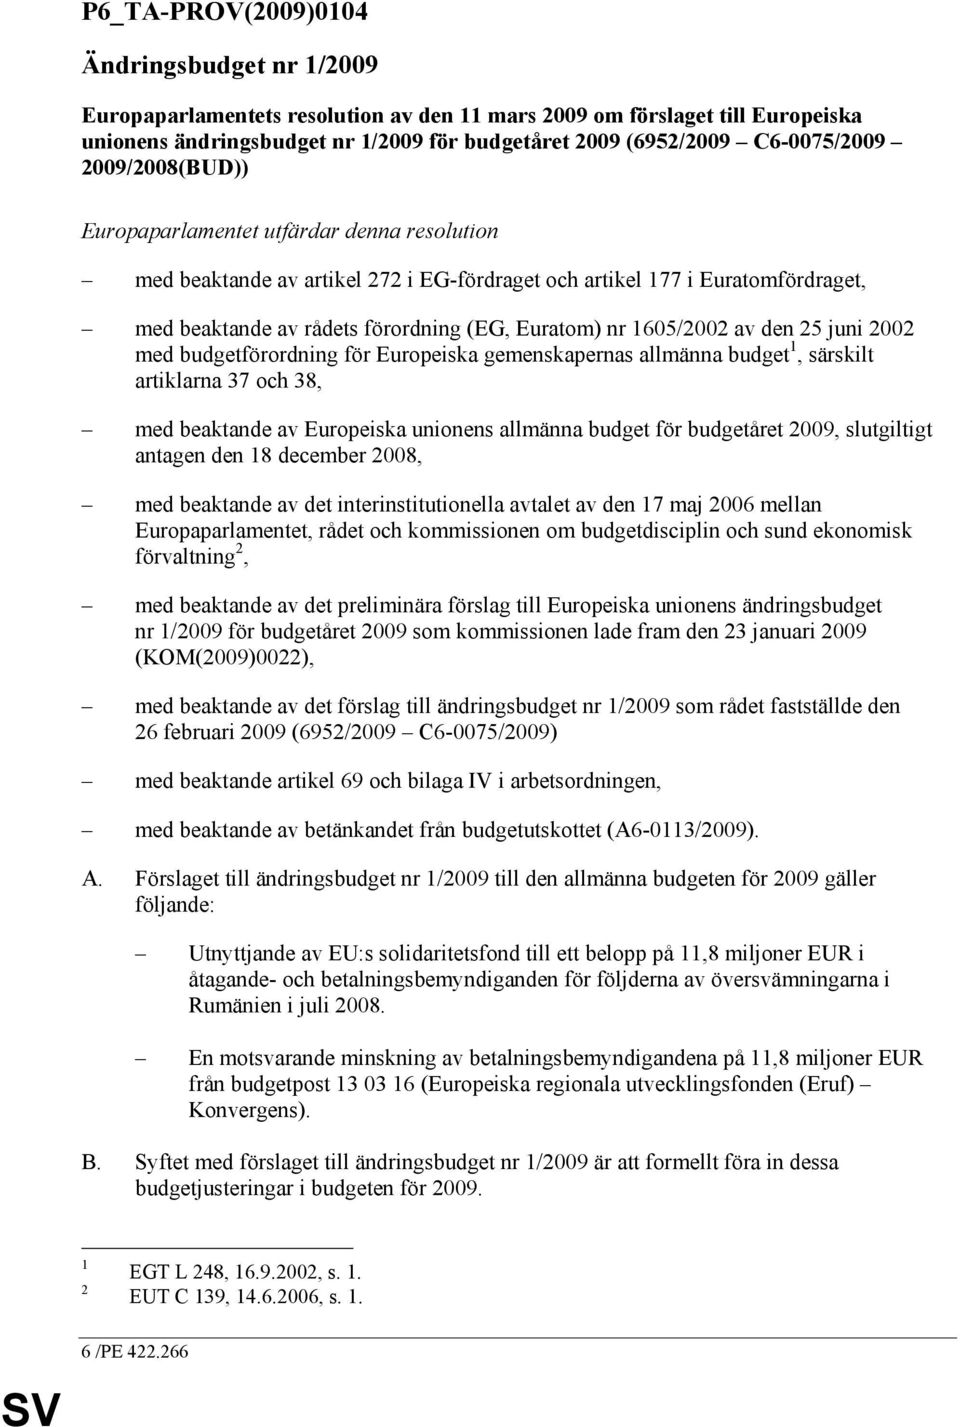 Euratom) nr 1605/2002 av den 25 juni 2002 med budgetförordning för Europeiska gemenskapernas allmänna budget 1, särskilt artiklarna 37 och 38, med beaktande av Europeiska unionens allmänna budget för